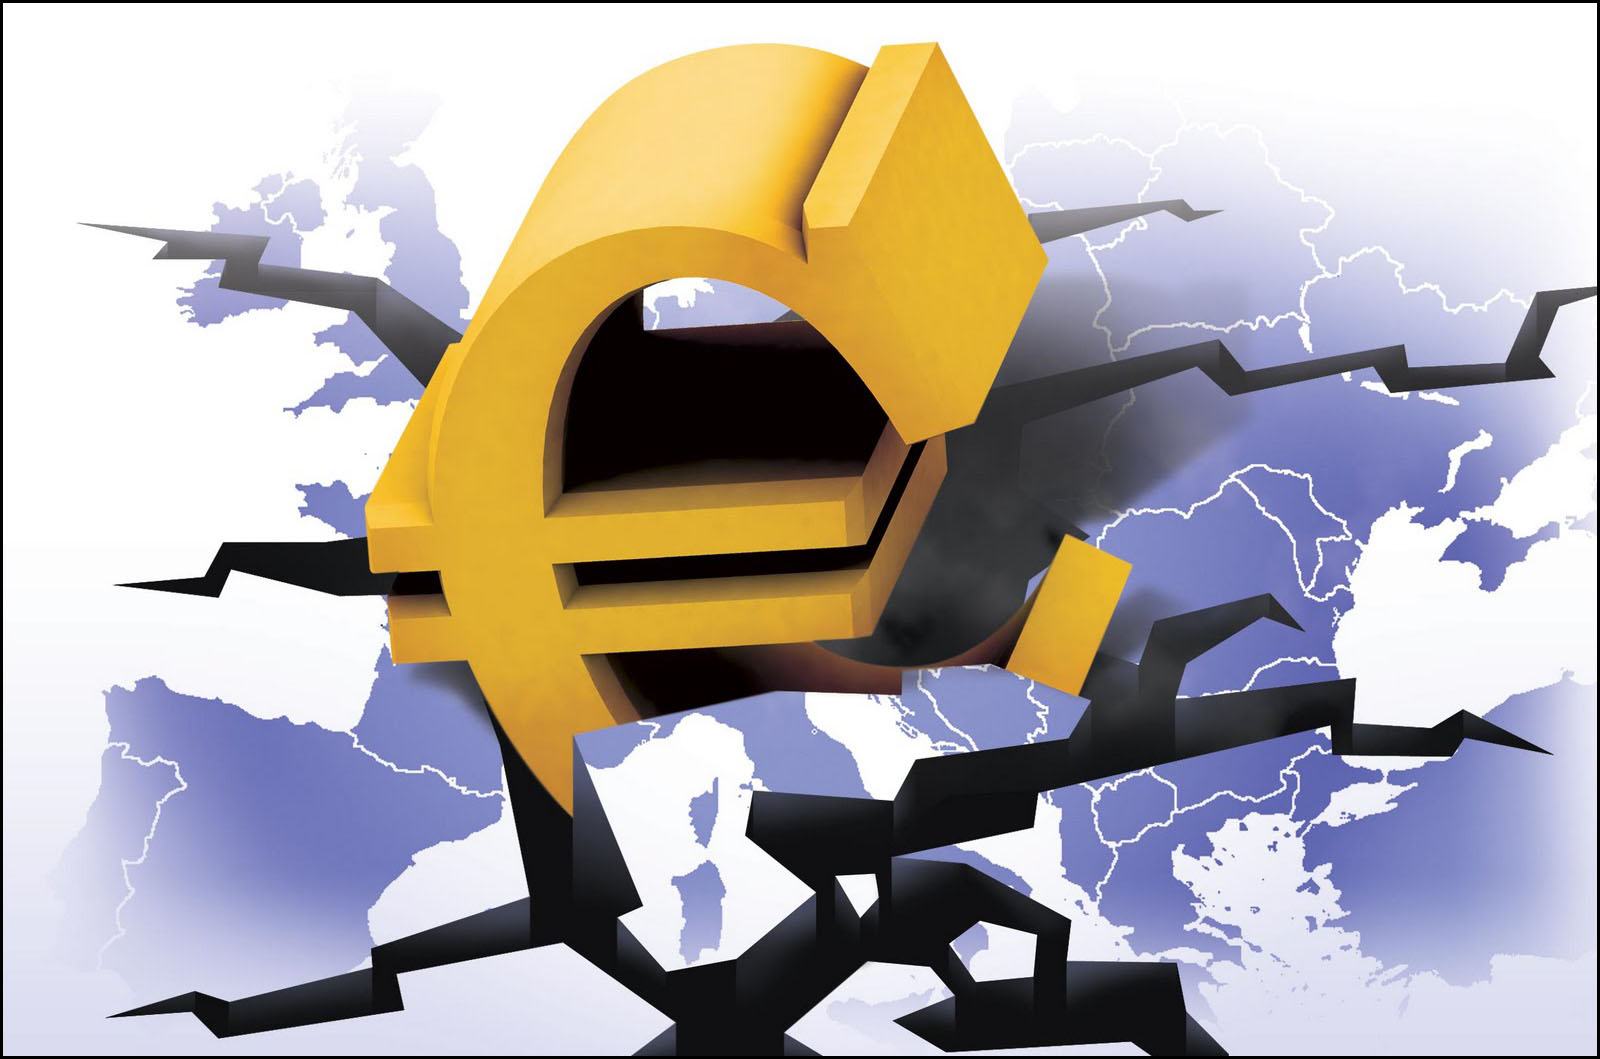 Финансово экономический кризис 2010. Банковский кризис в Европе. Евро кризис. Европейский кризис. Европейский долговой кризис 2010.